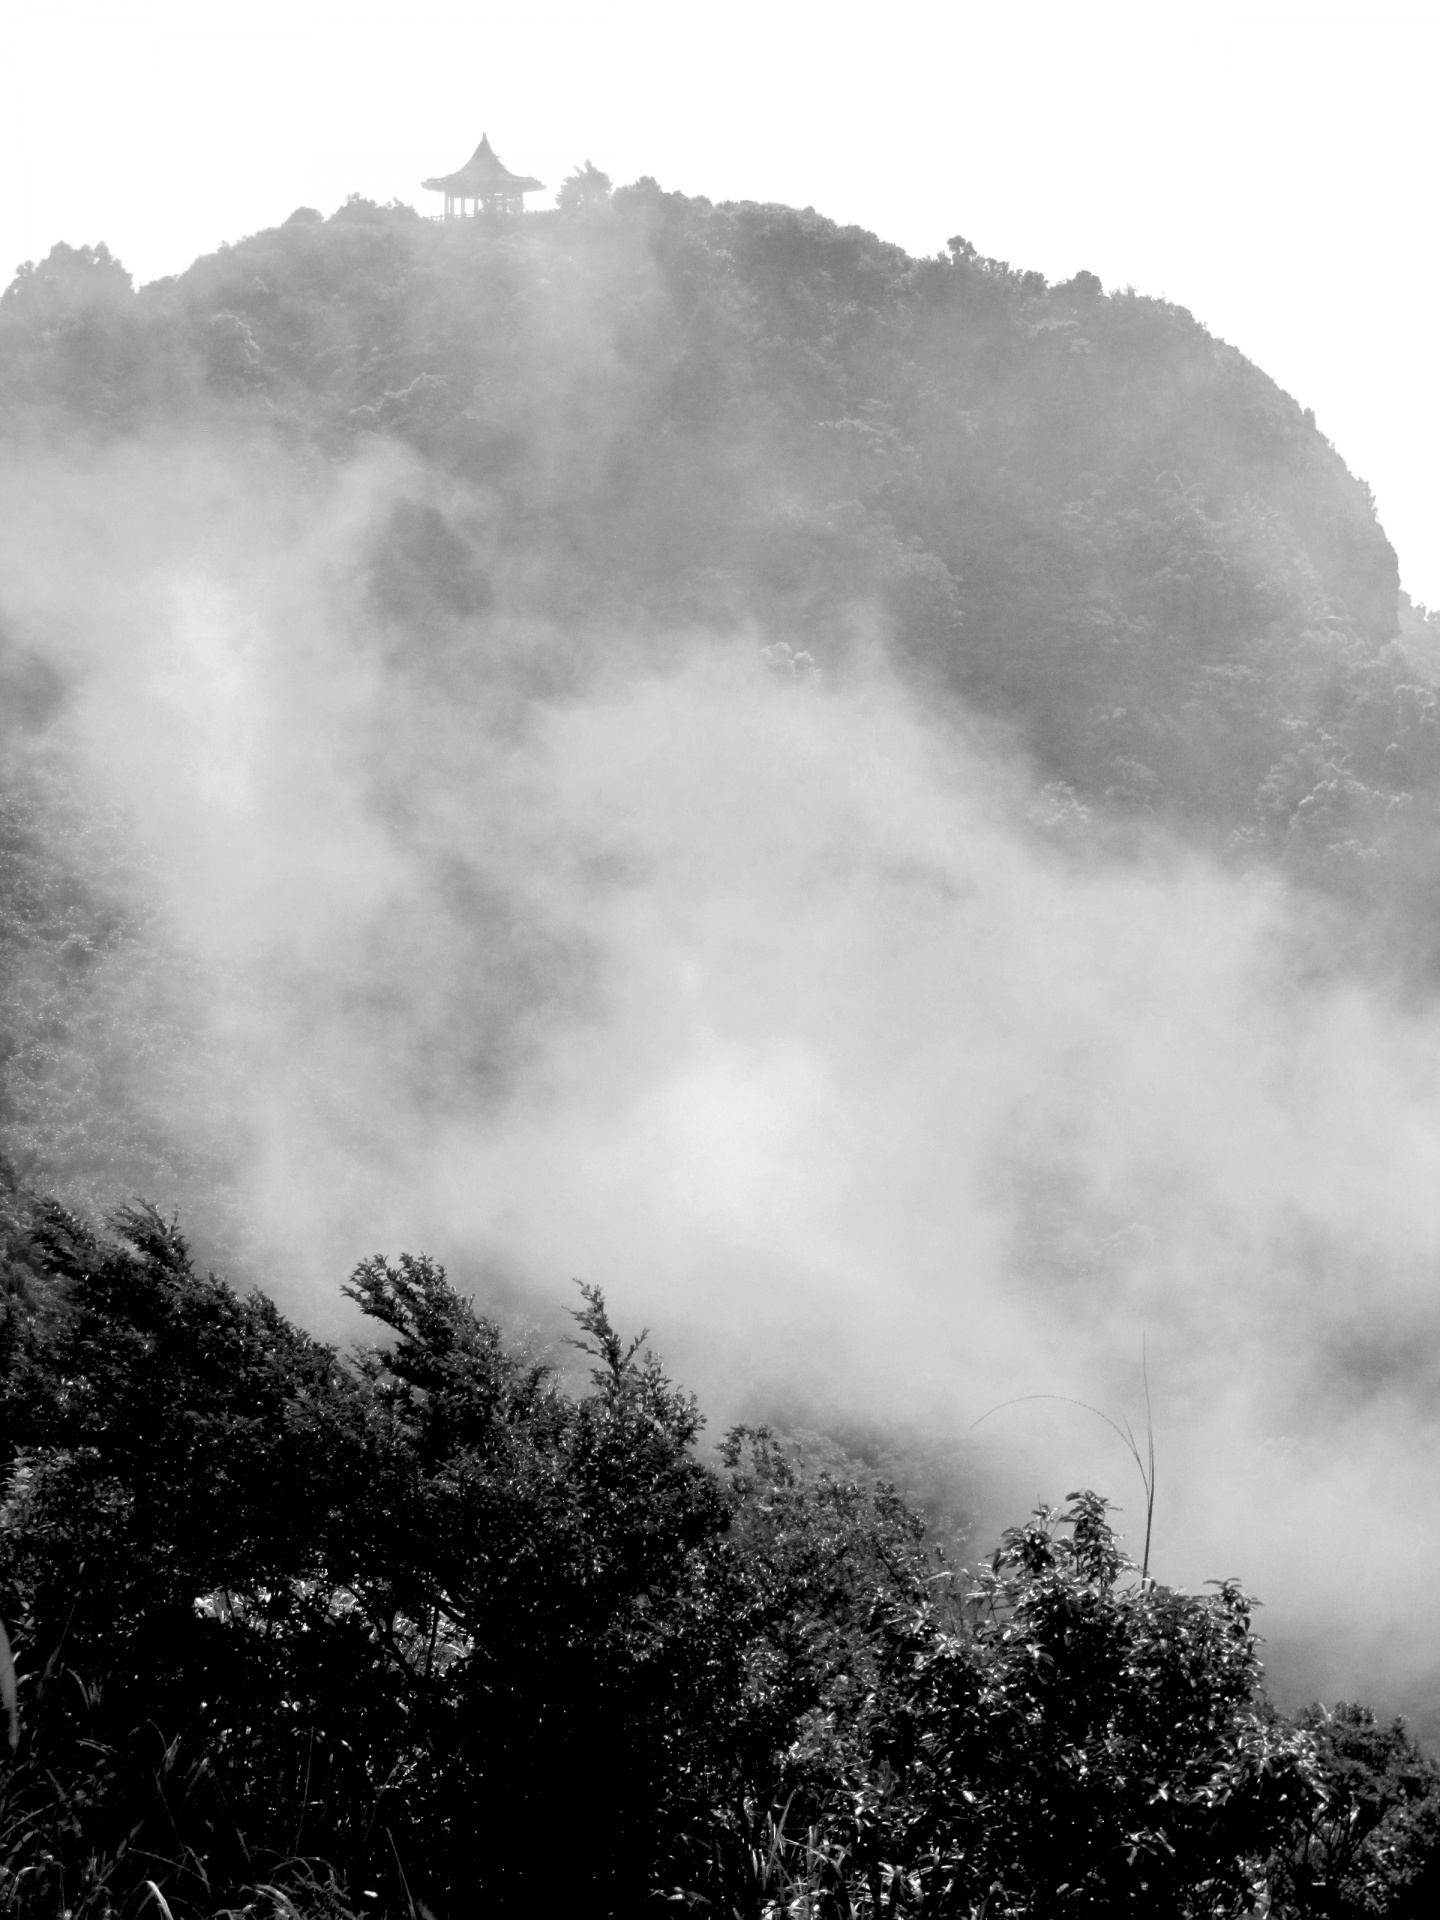 Taiwan Mountain Scenes 20